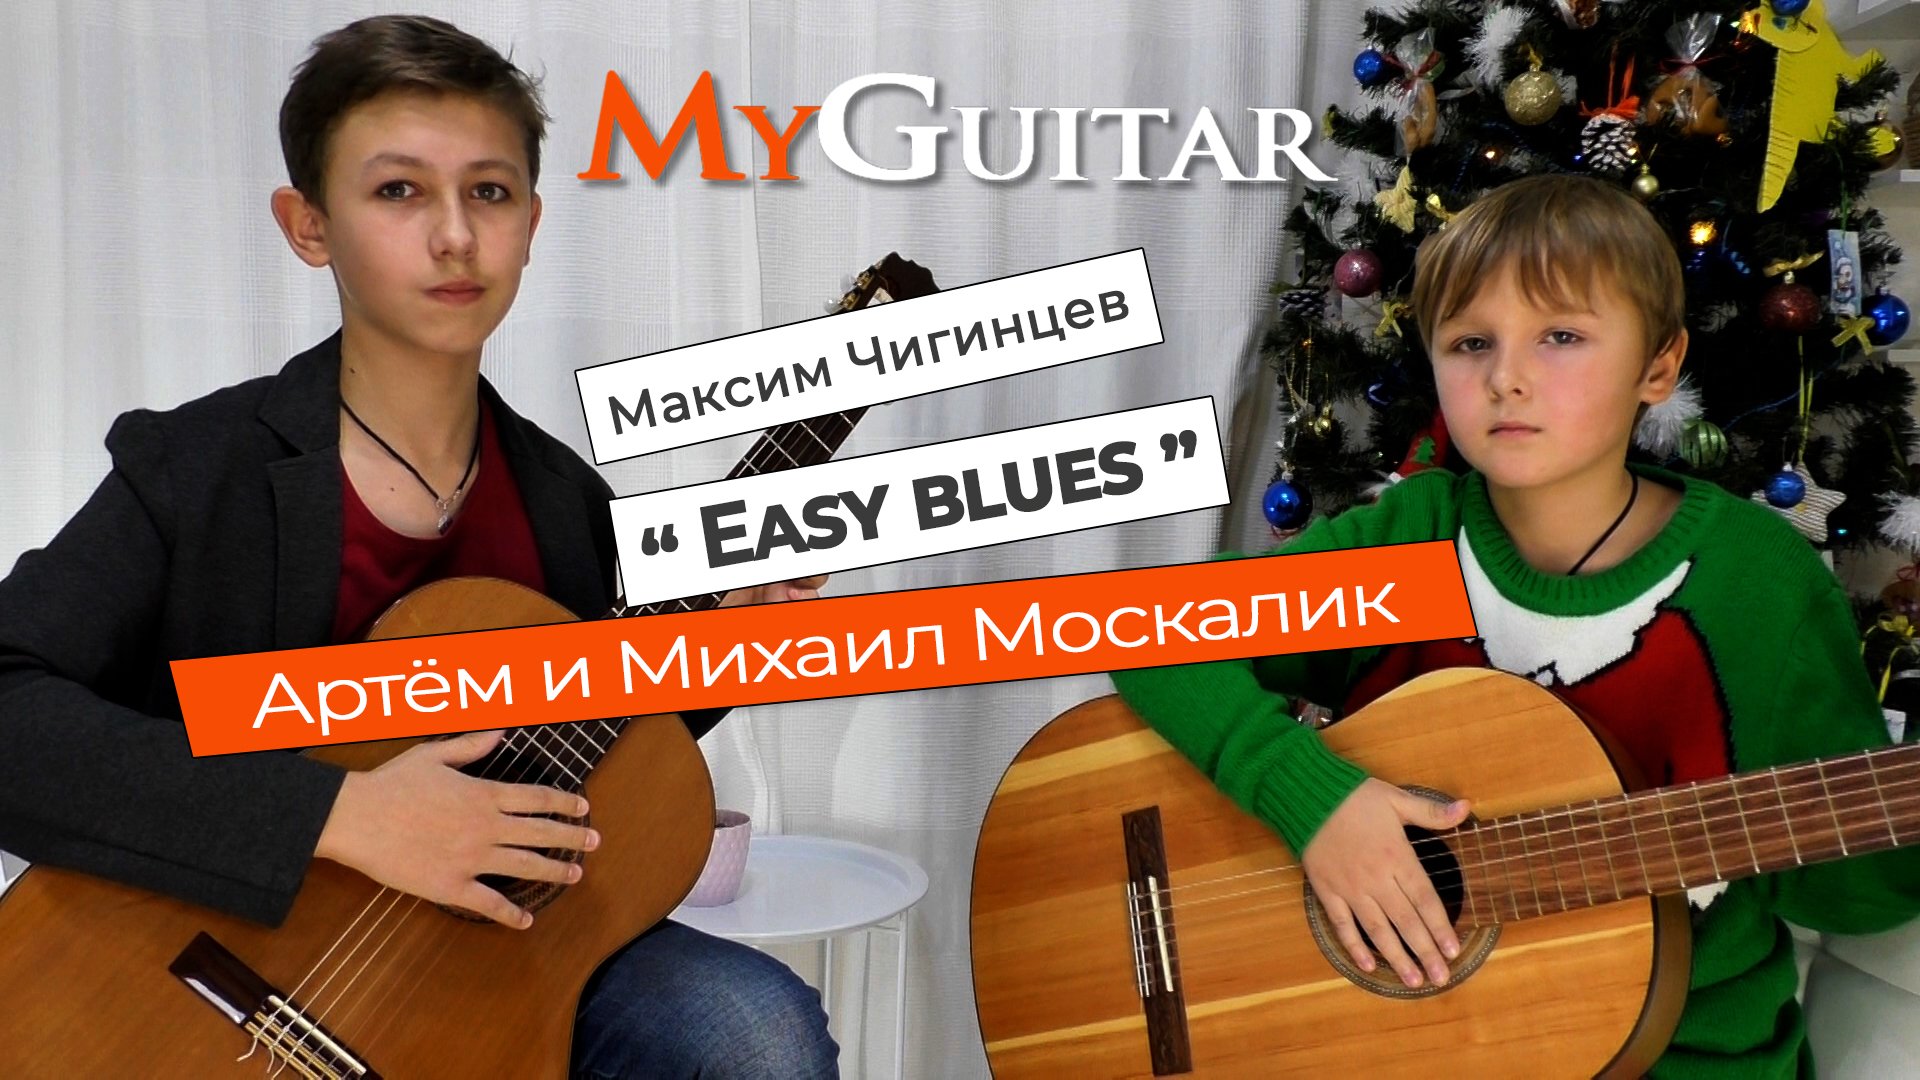 "Easy Blues", Максим Чигинцев. Исполняют Артём и Михаил Москалик, (8 и 12 лет).